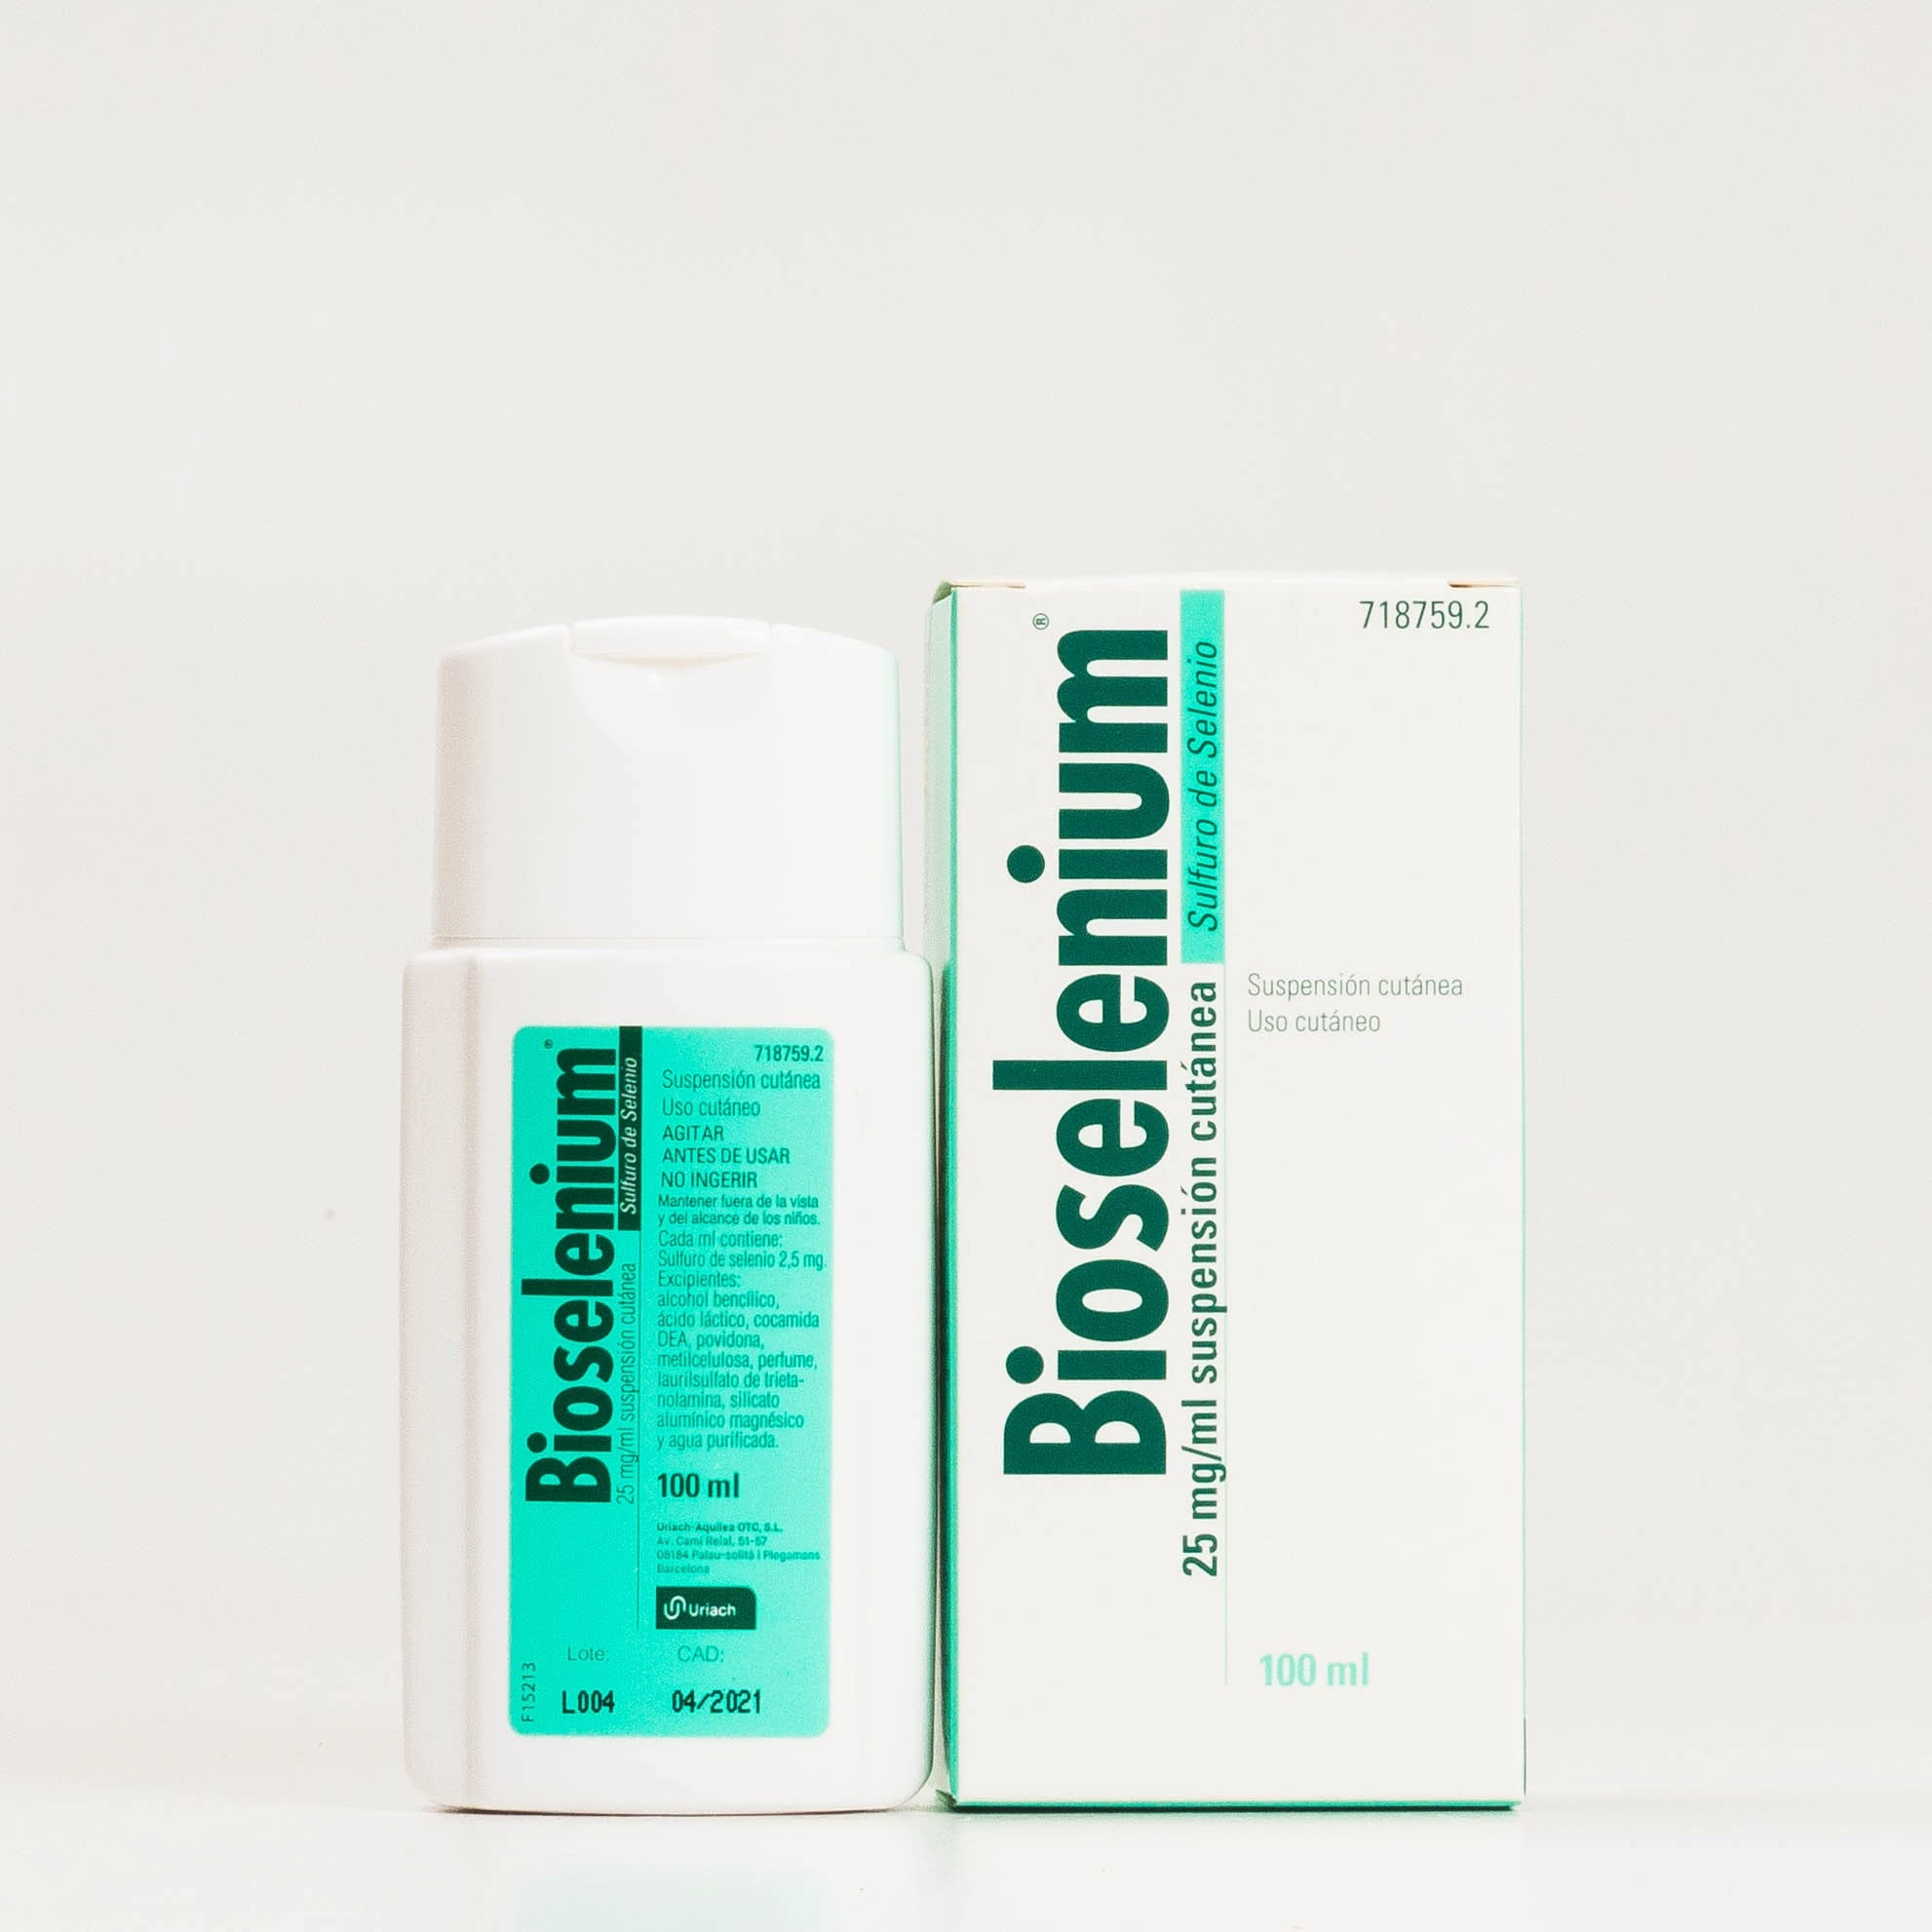 Comprar Bioselenium mg/ml, 100 sin